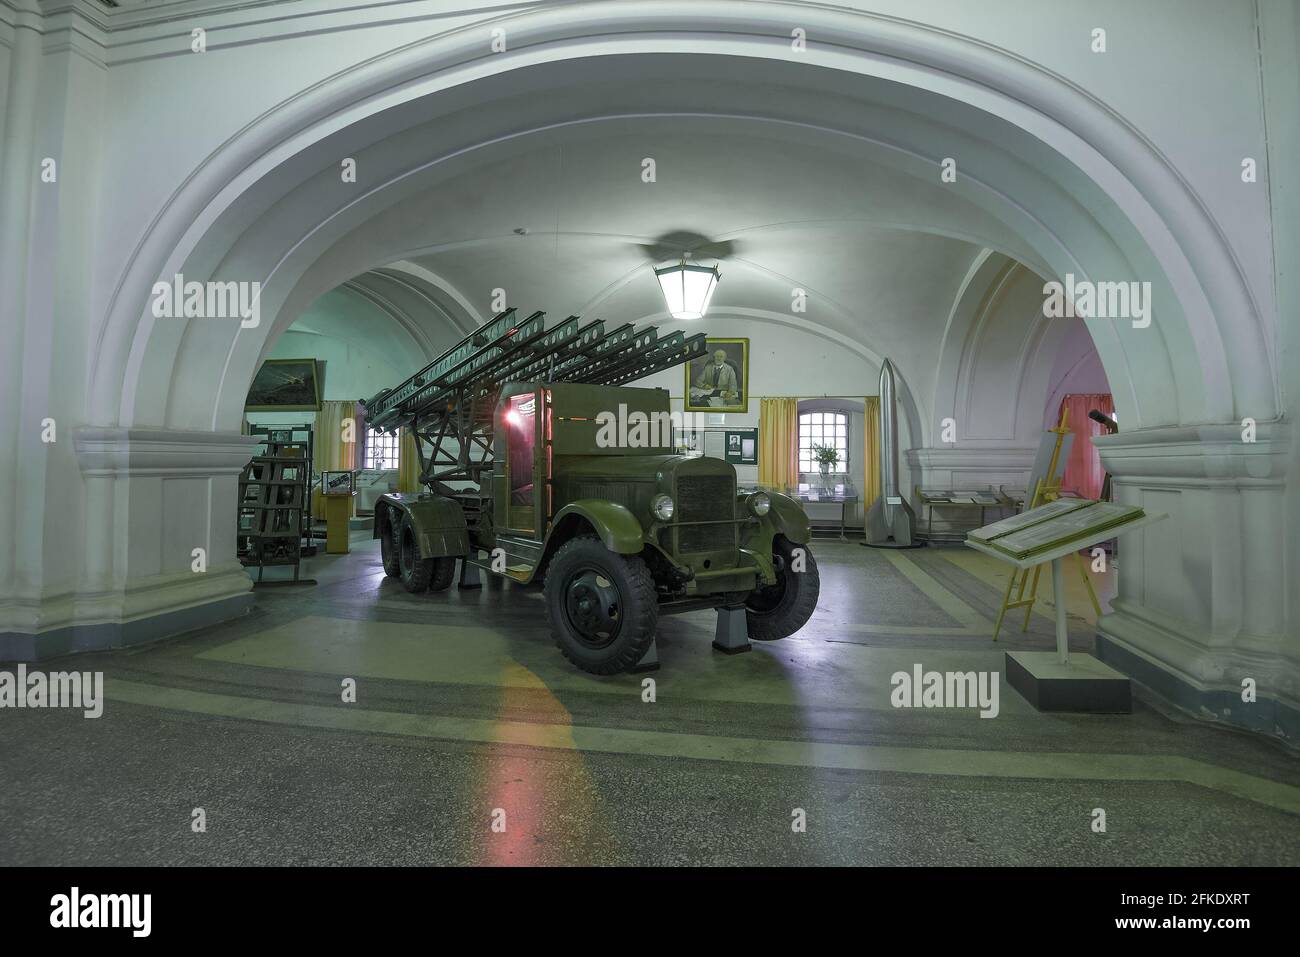 SAN PETERSBURGO, RUSIA - 30 DE JUNIO de 2017: BM-13 - Vehículo soviético de combate de artillería de cohetes (Katyusha) basado en el camión ZIS-6 en la exposición del Foto de stock